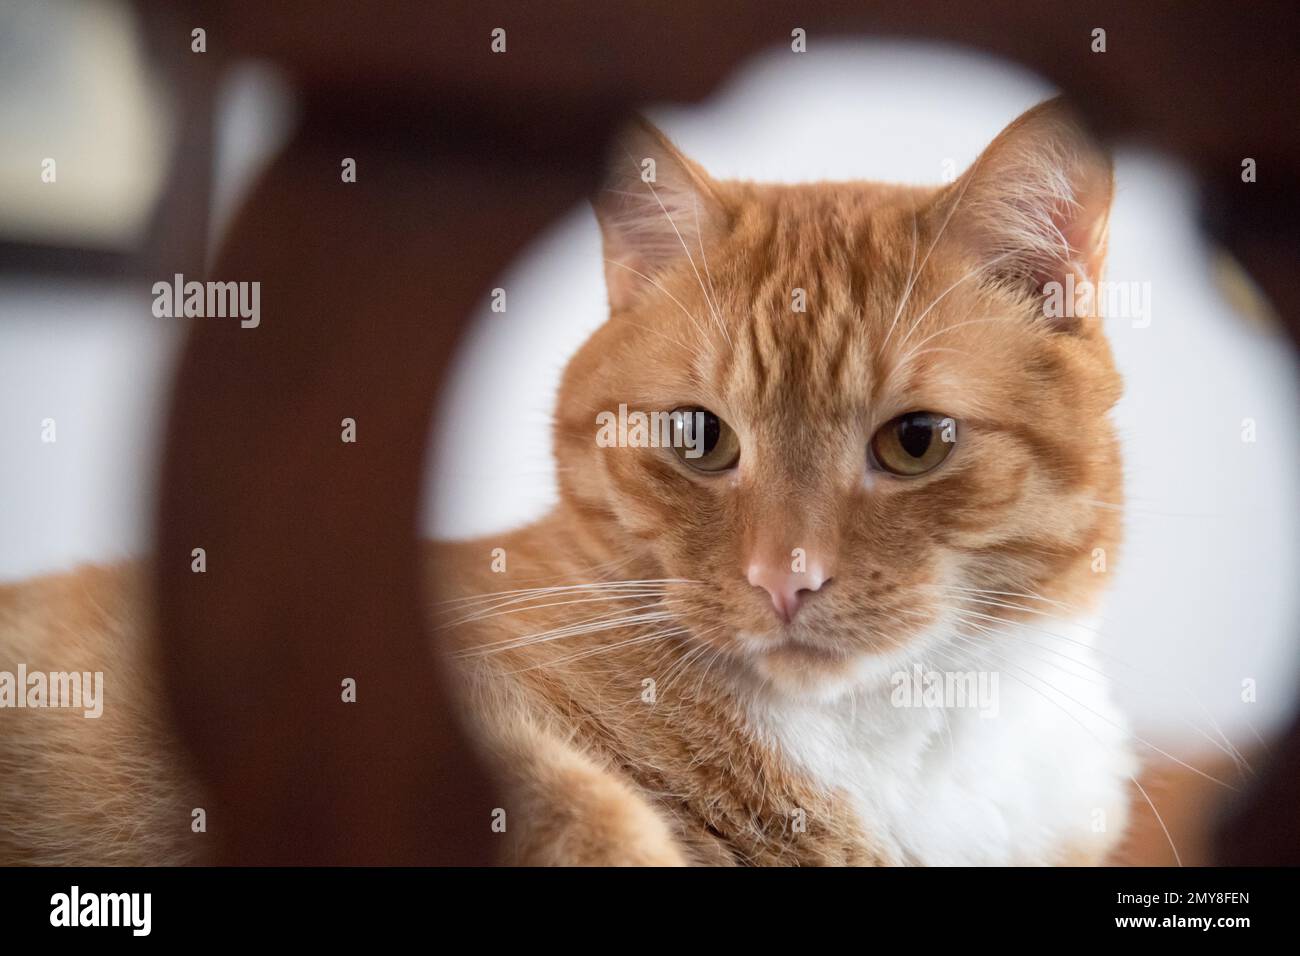 Home cat © Wojciech Strozyk / Alamy Stock Photo Stock Photo